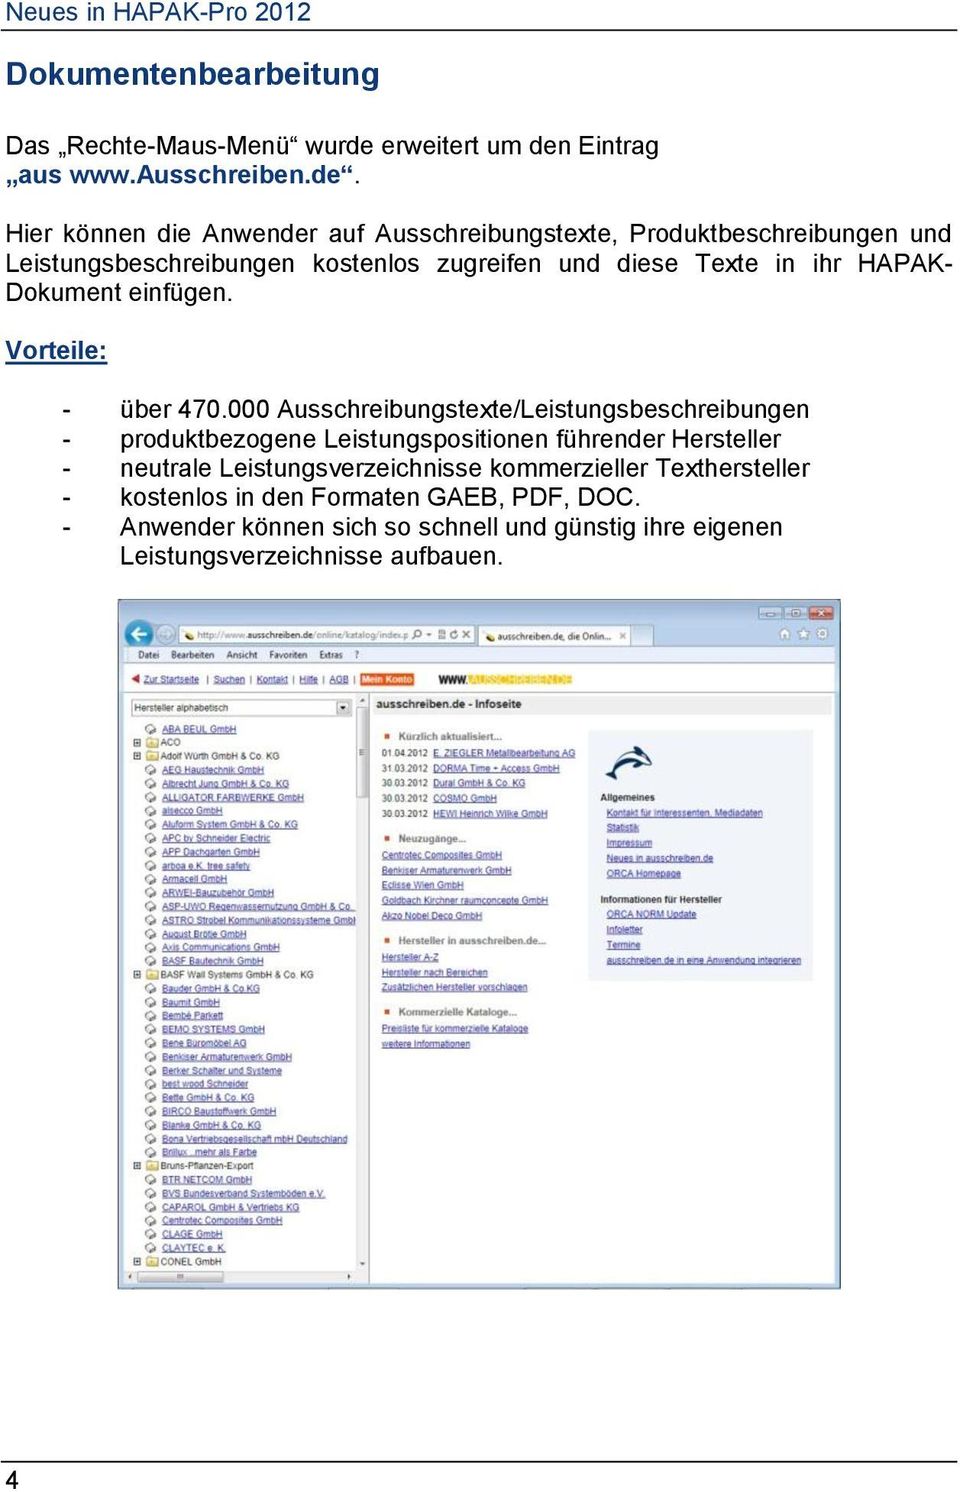 Eintrag aus www.ausschreiben.de.